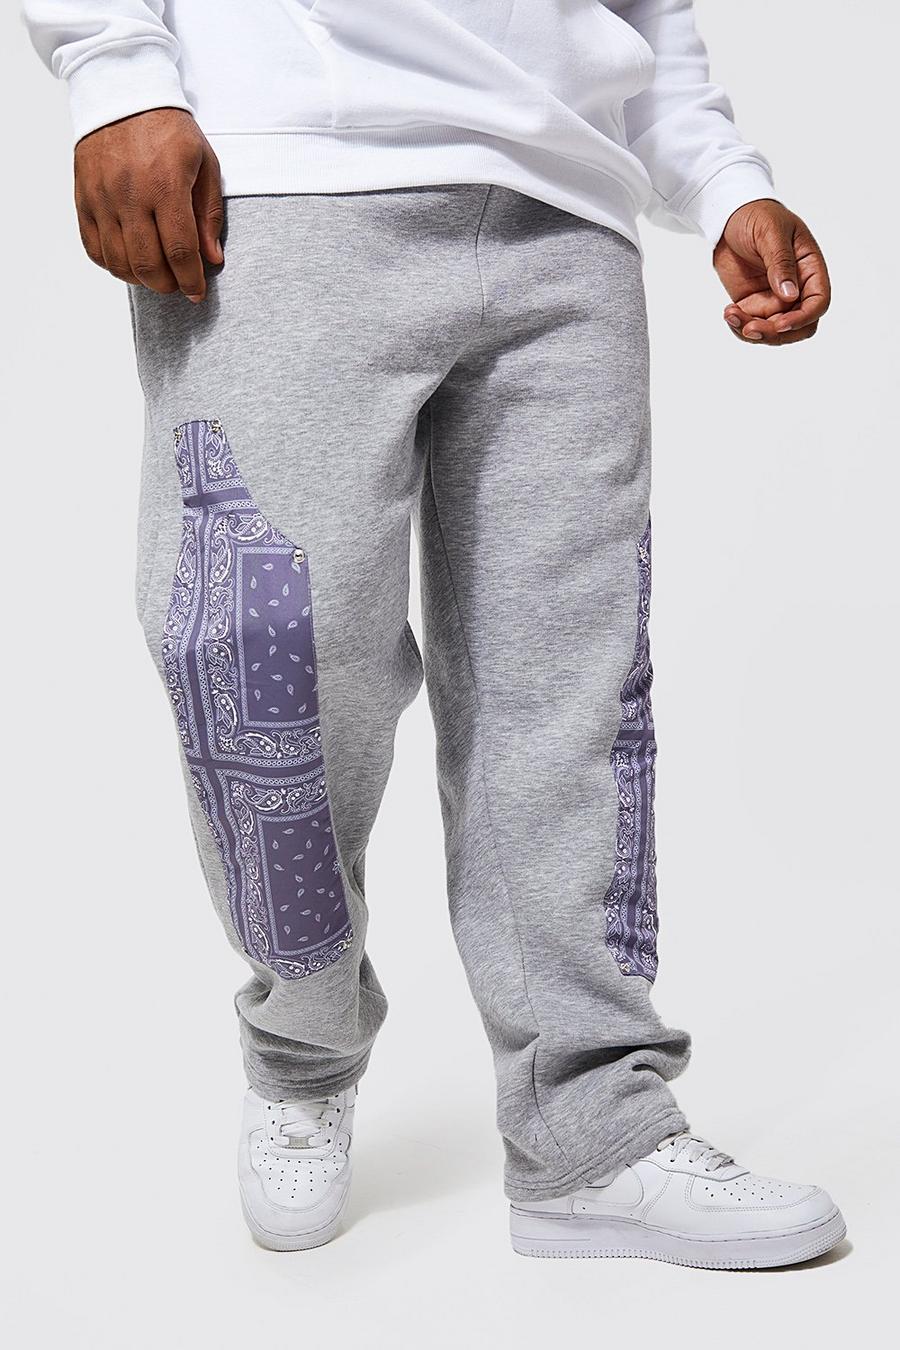 אפור grigio מכנסי ריצה עם הדפס בנדנה ופאנל בסגנון מכנסי פועלים, מידות גדולות